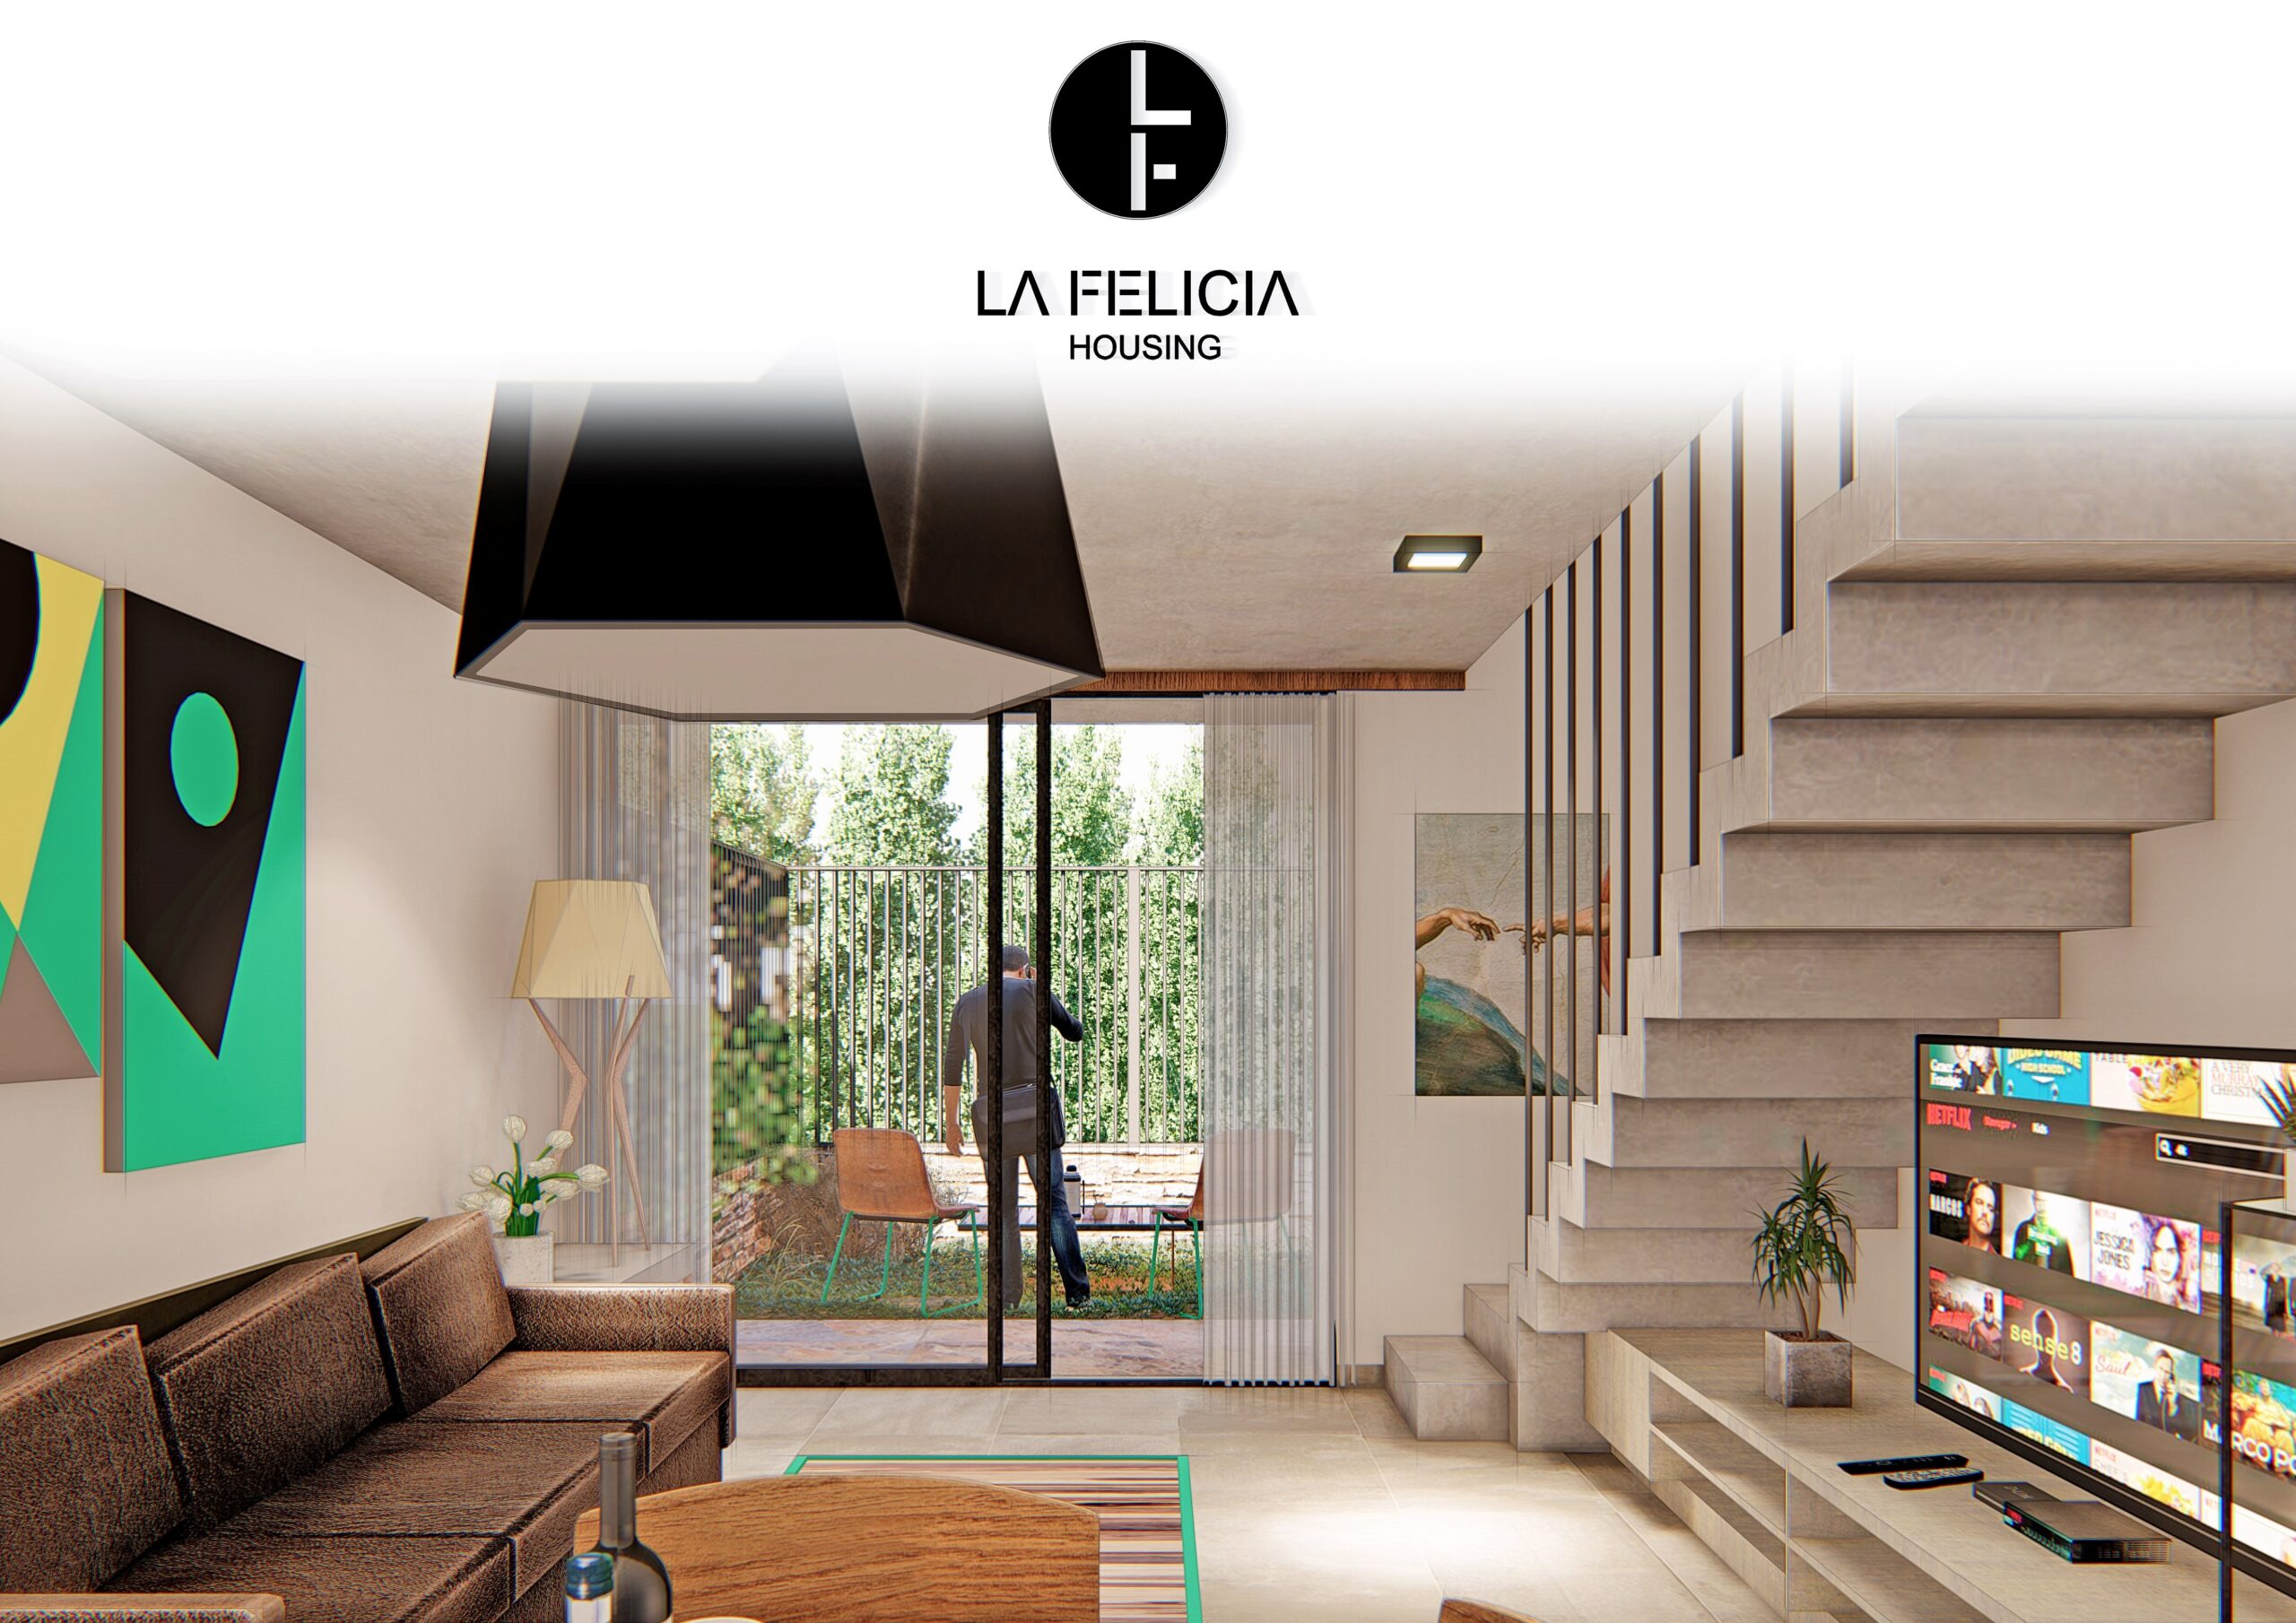 LA FELICIA HOUSING – 17 unidades de 2 dormitorios exclusivas – La Calera